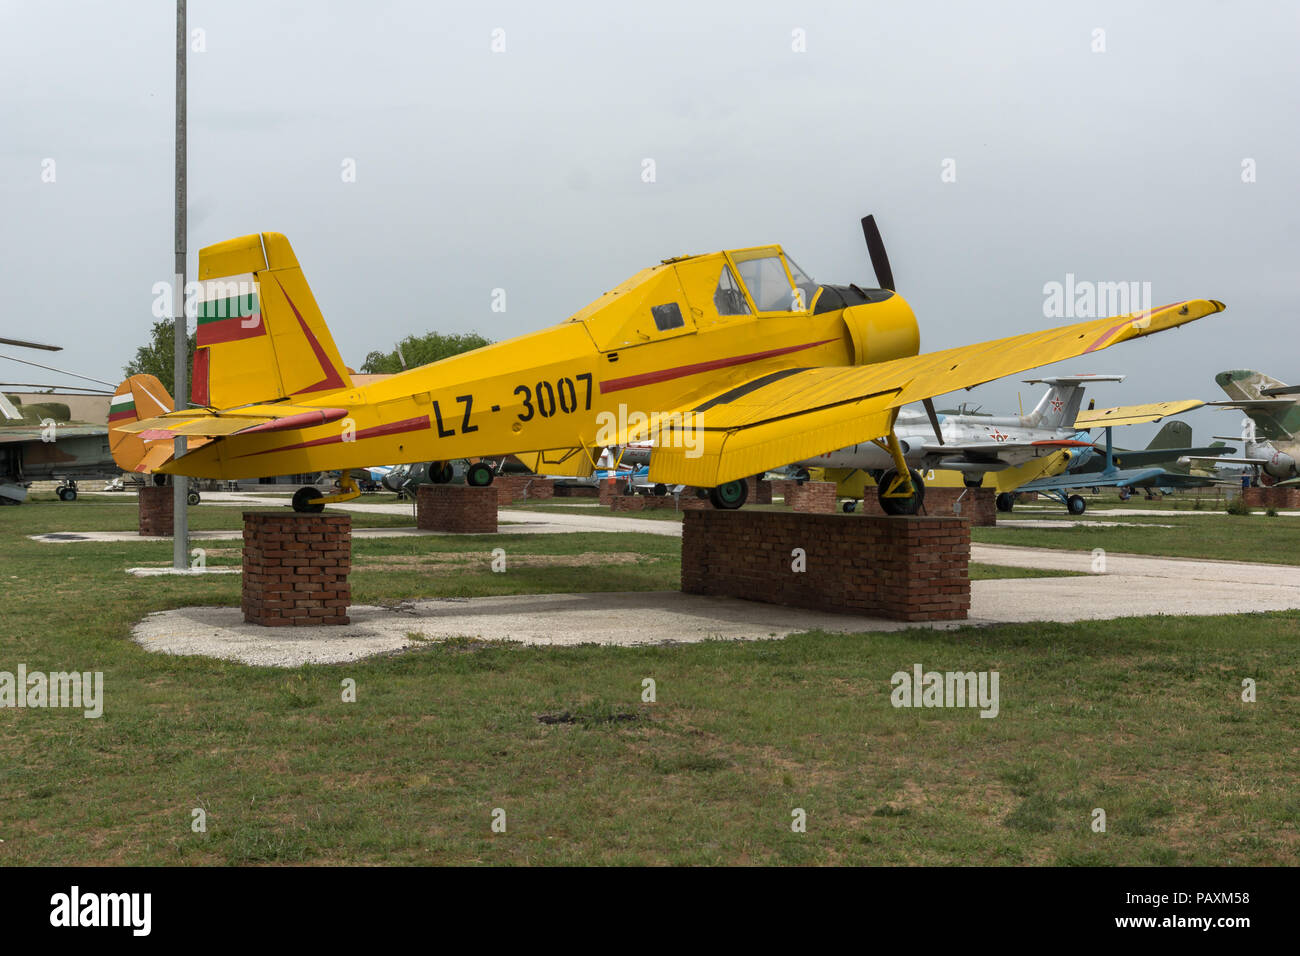 KRUMOVO, PLOVDIV, BULGARIA - 29 APRIL 2017: Plane LZ 3007 inAviation Museum near Plovdiv Airport, Bulgaria Stock Photo